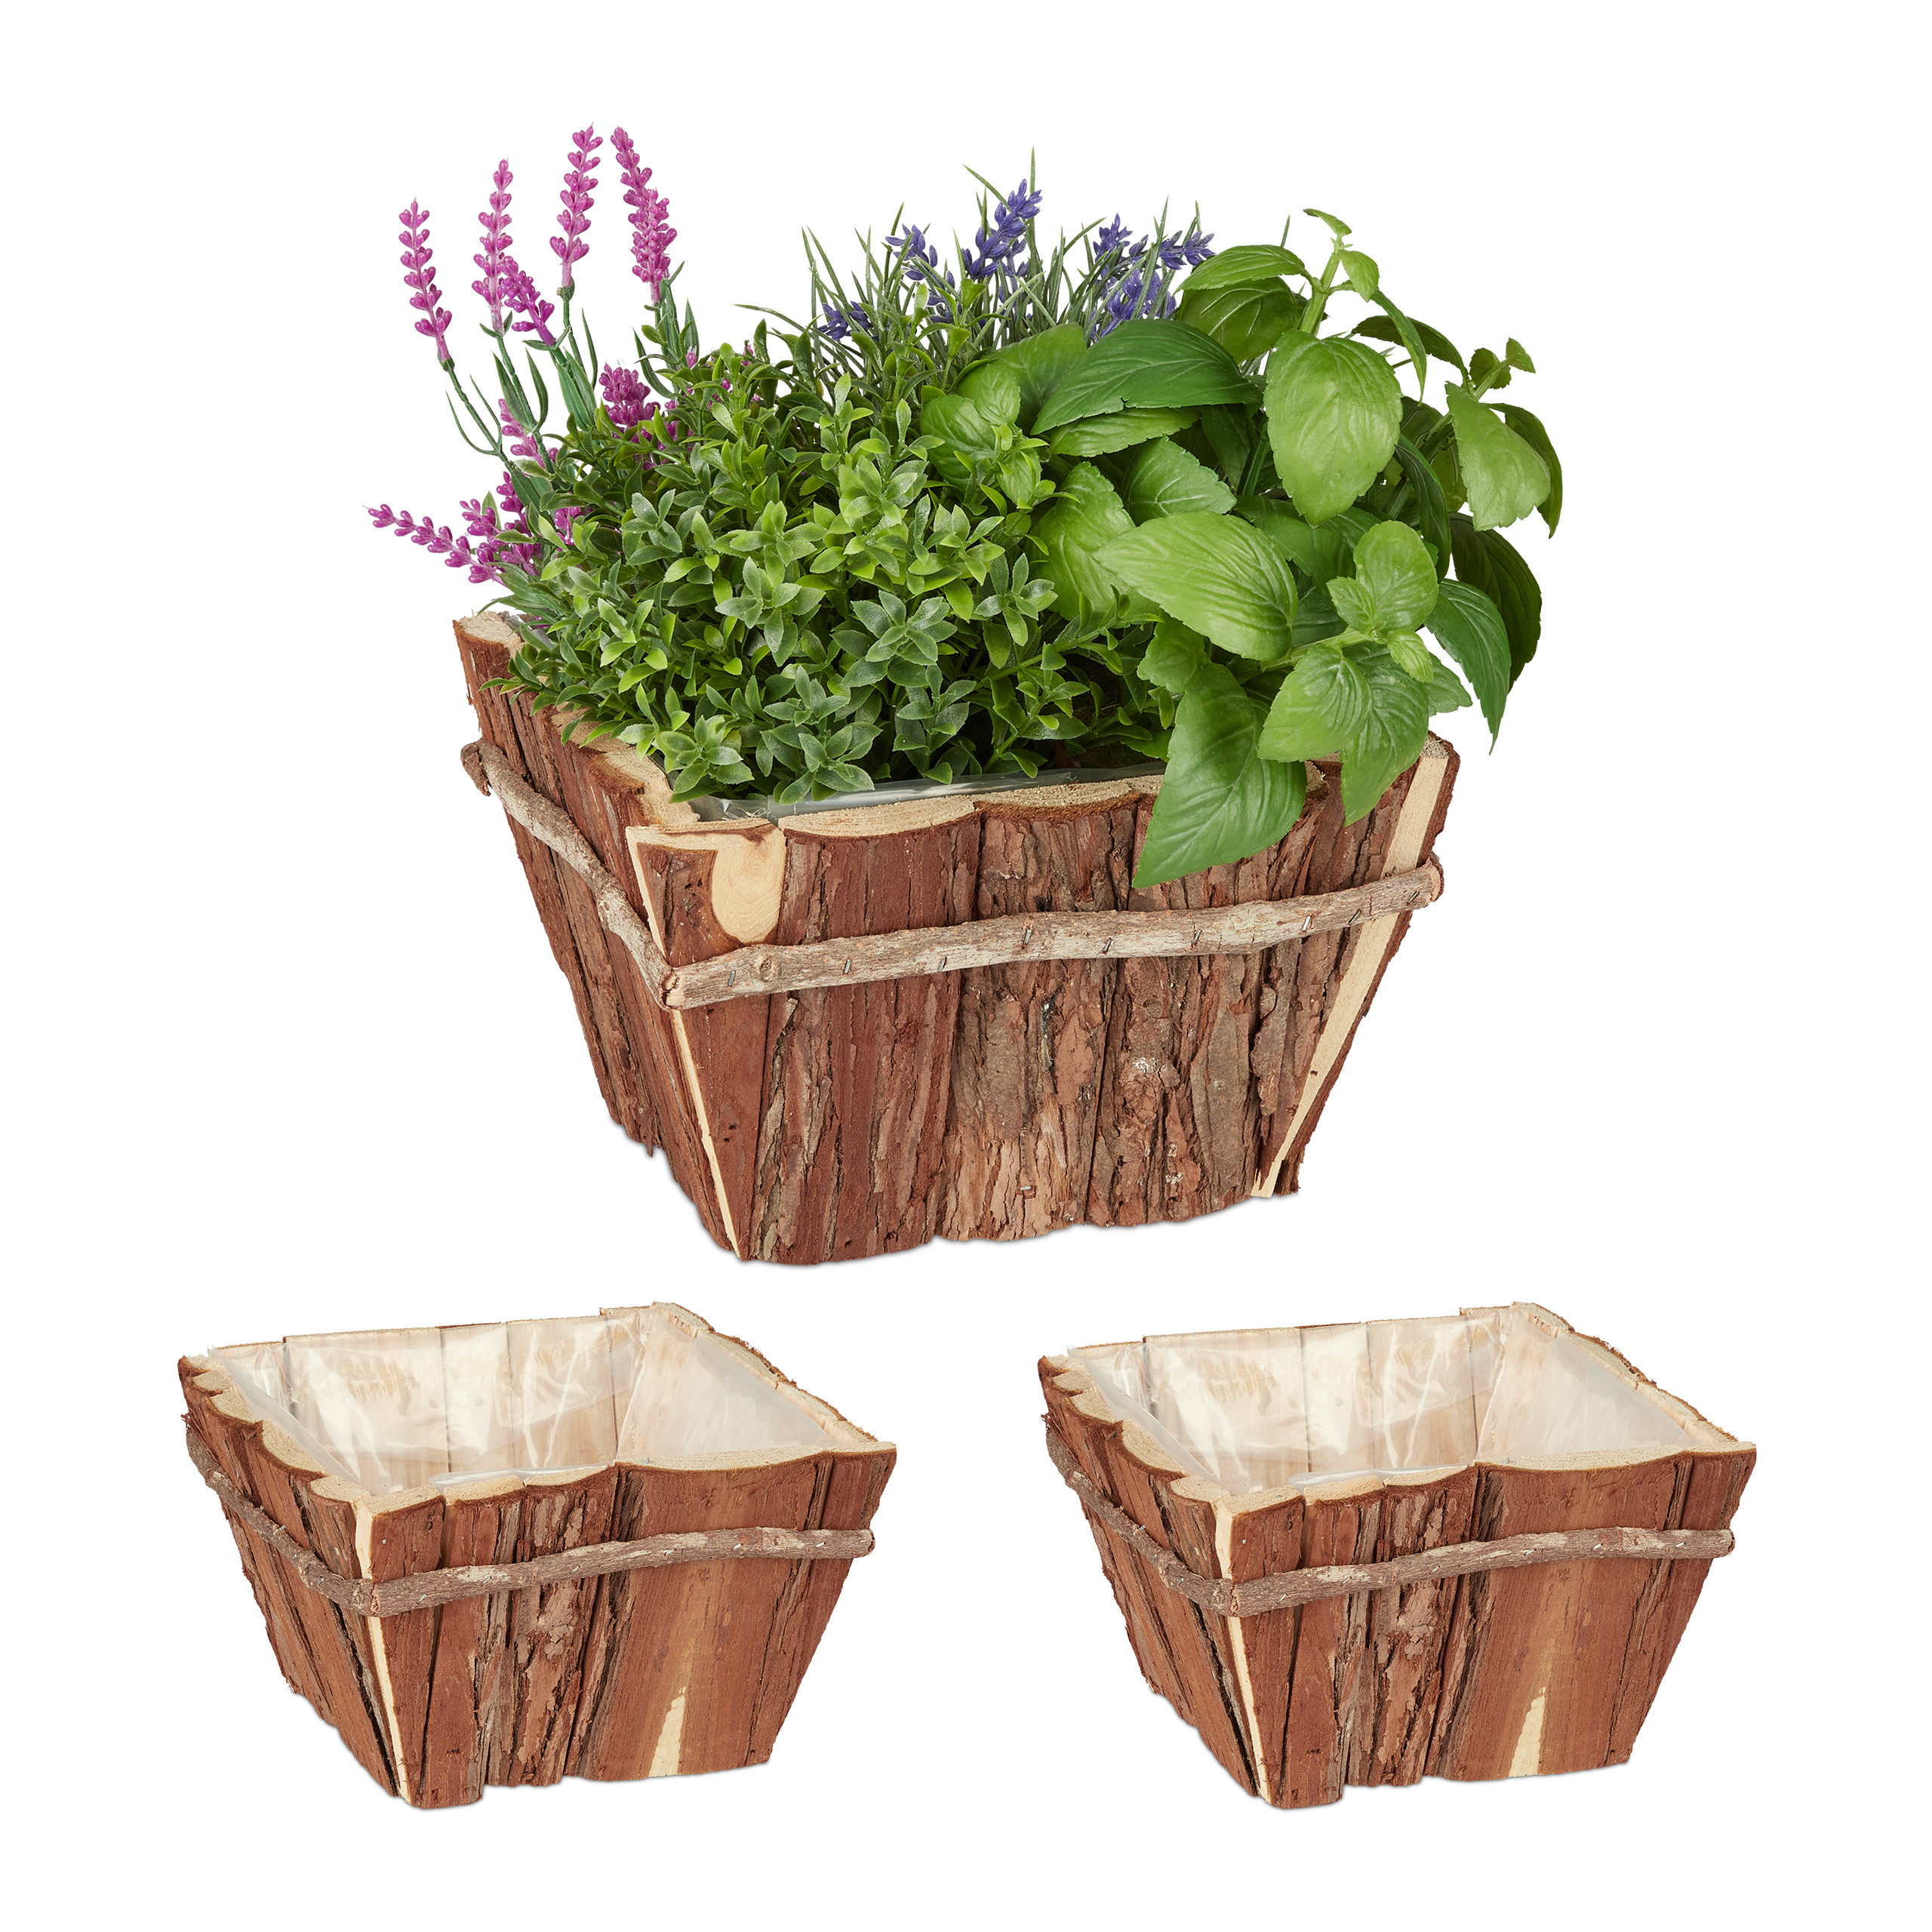 Relaxdays Pots de fleurs extérieur, lot de 3, bois naturel avec